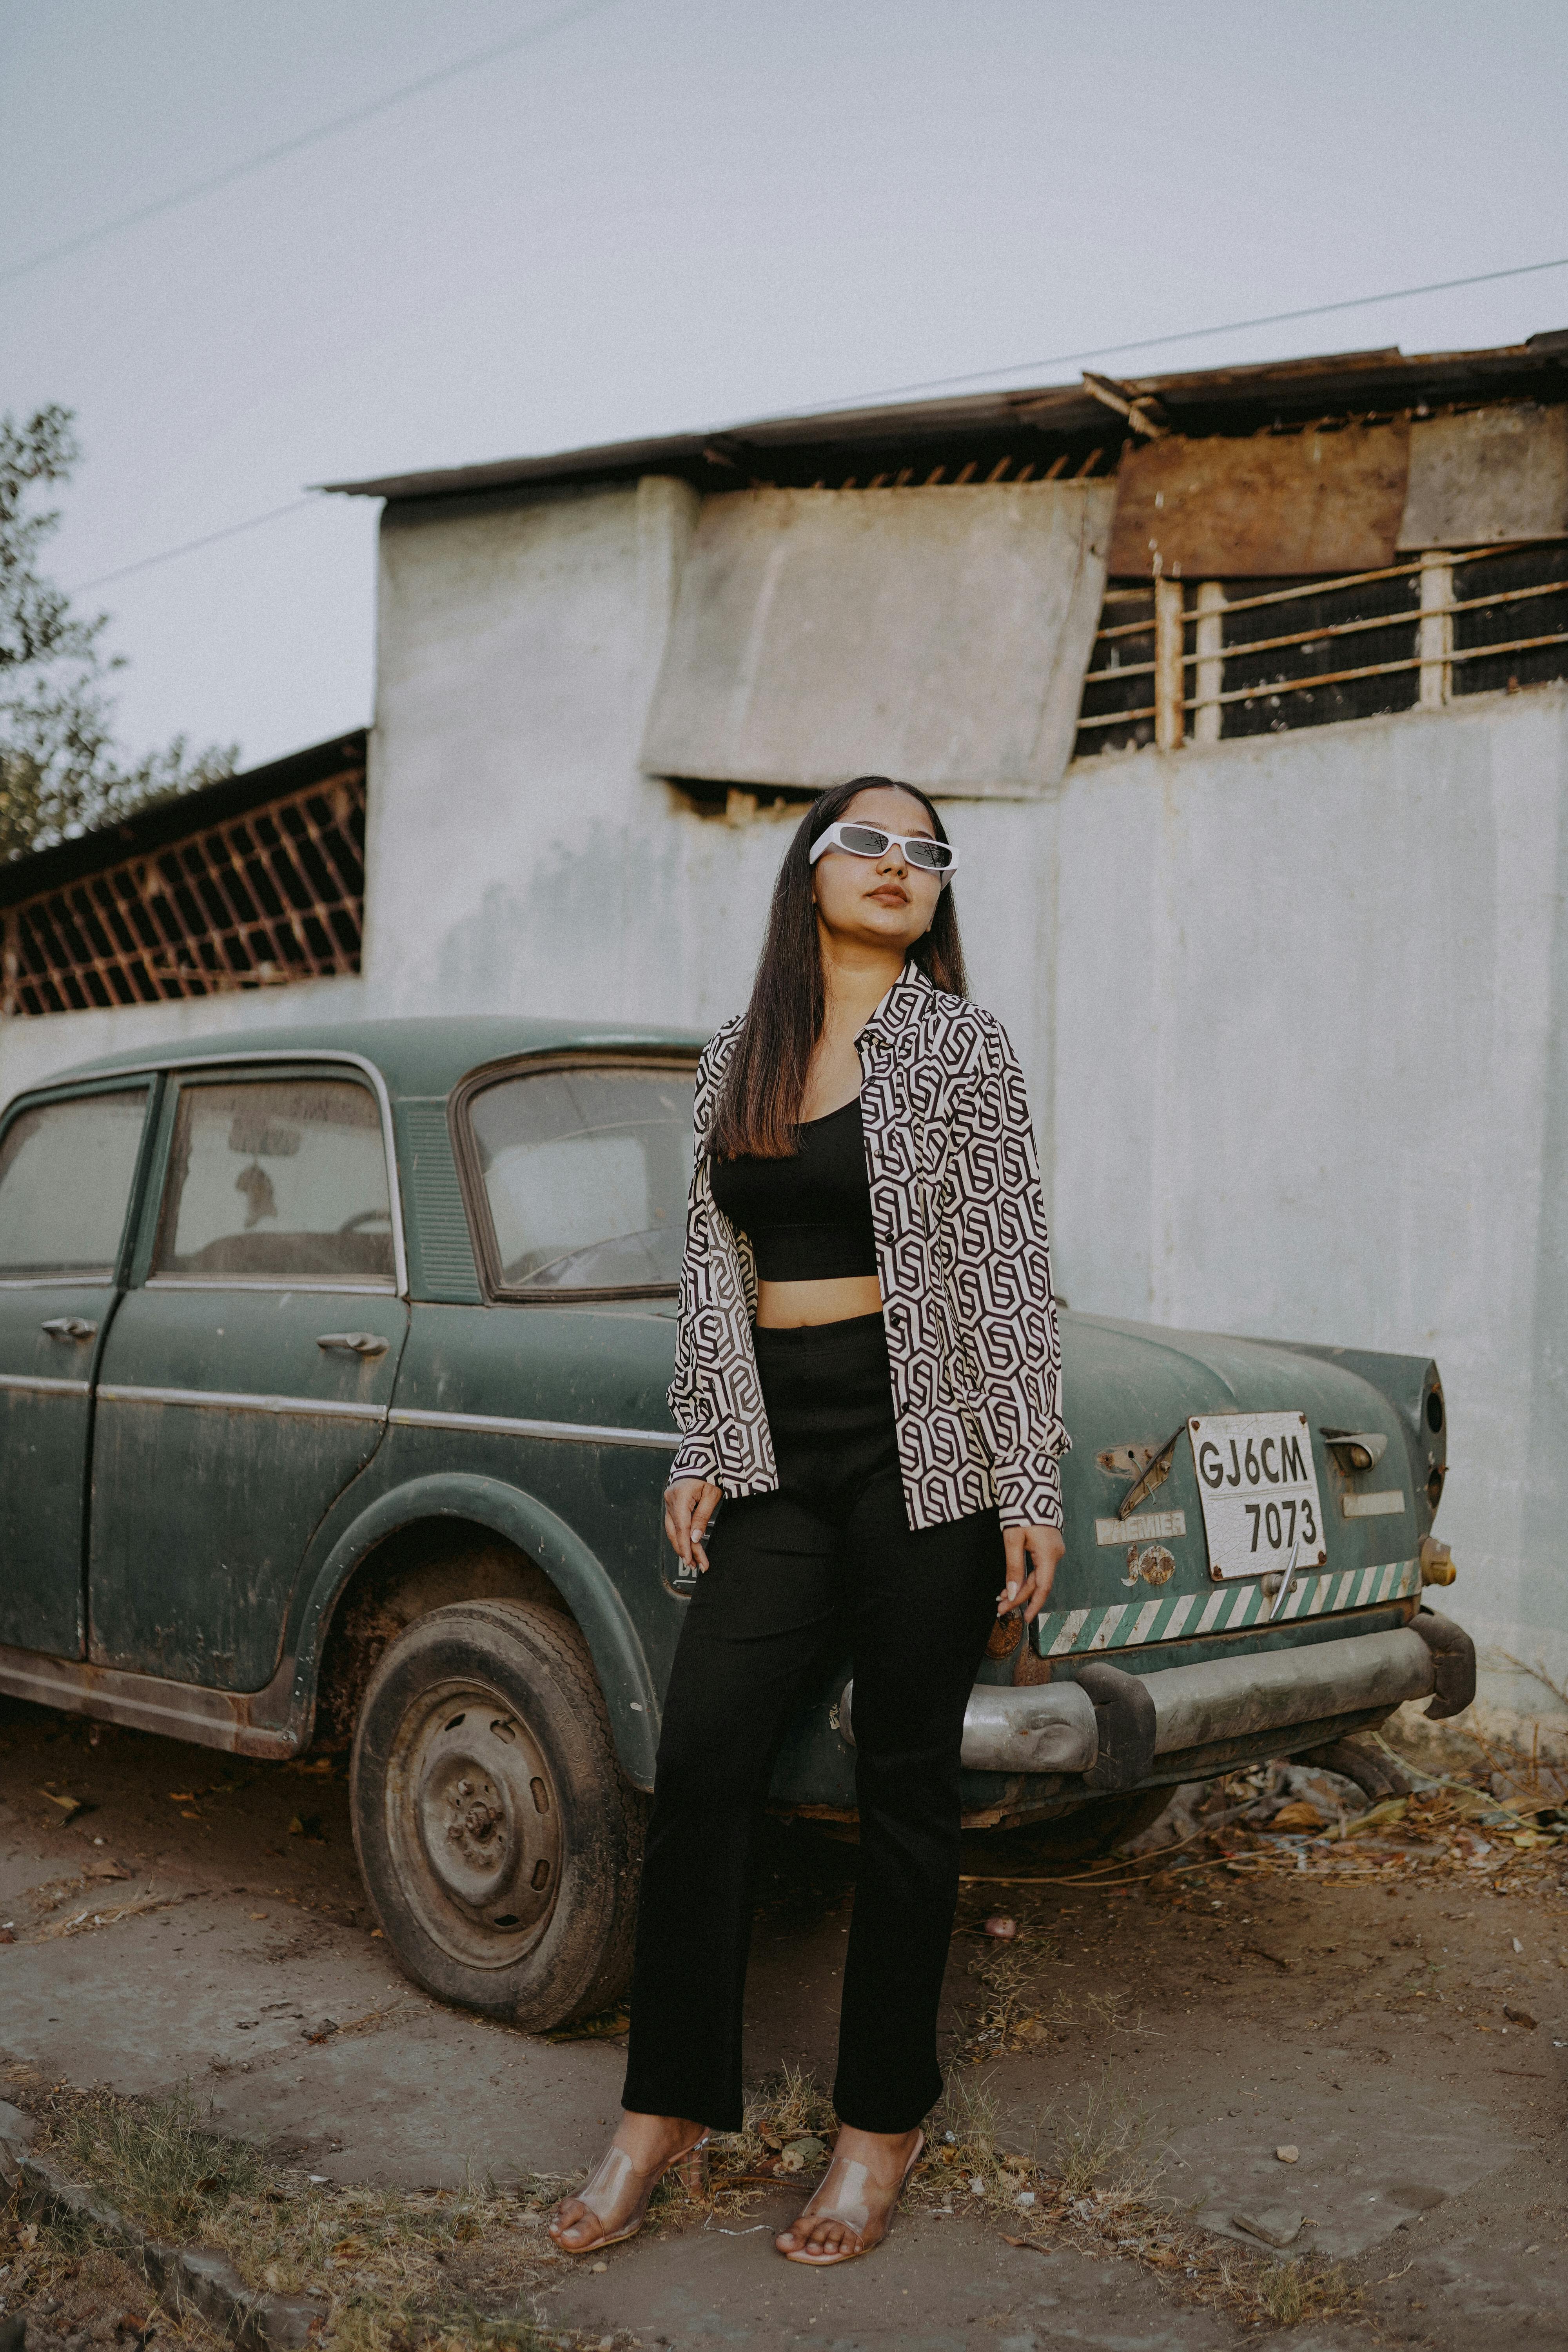 Photoshoot Poses on Baleno Car🔥 at Road Side Location 🔥 | Nikon 5300D |  Aniket Kushwaha | - YouTube